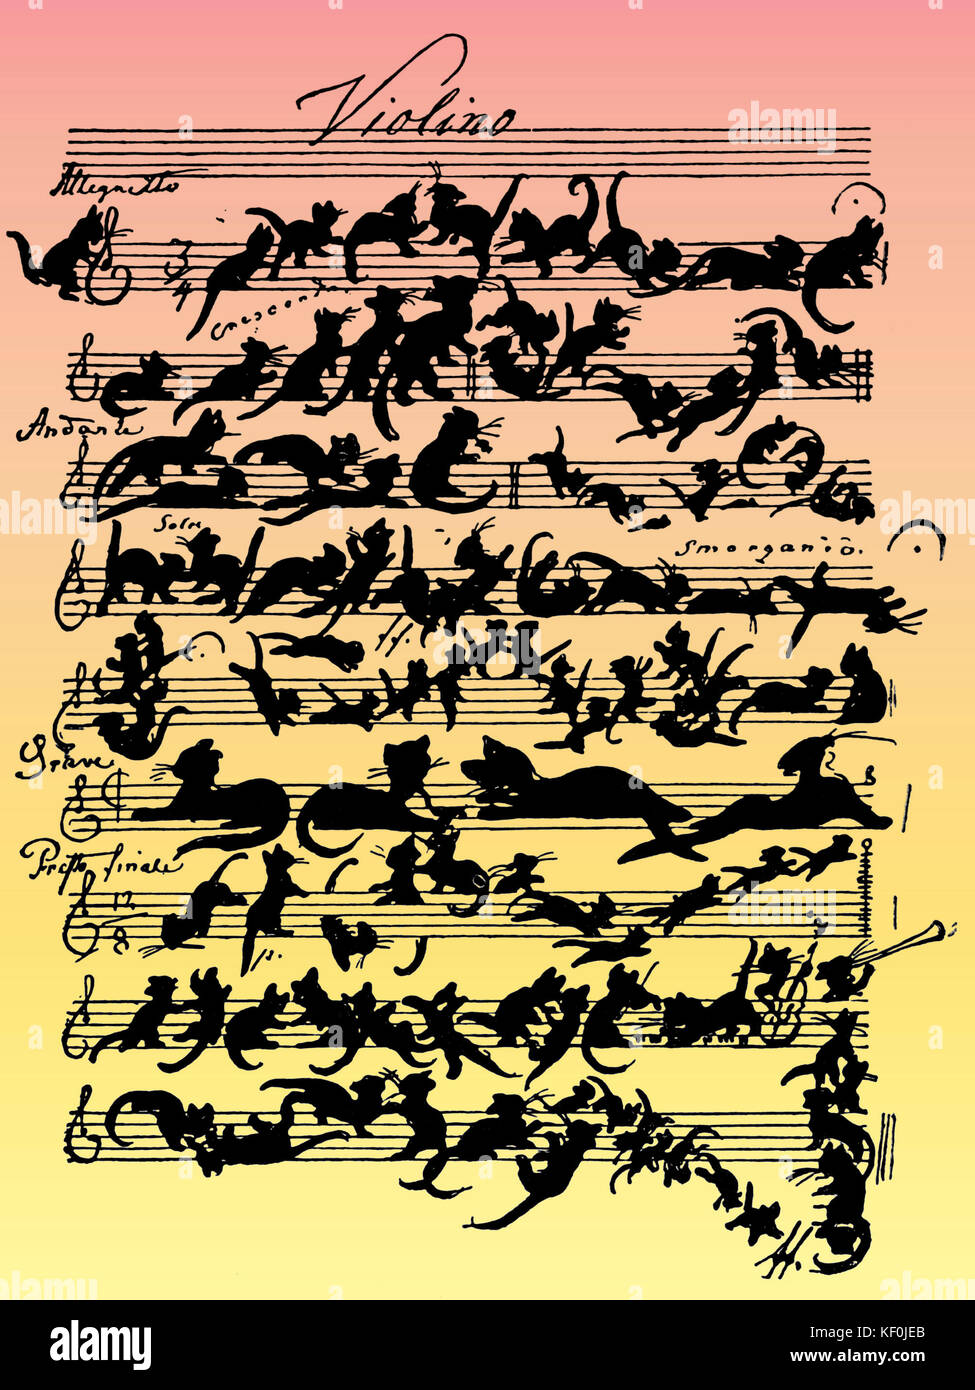 'Cat Violine Score" von Moritz von Schwind mit dem Titel "Zukunftsmusik" (Musik der Zukunft). Begriff geprägt von Wagner parodieren Wagners Konzept. Von Schwind wurde in Schuberts Freundeskreis. 1804-1871, österreichischer Maler. Stockfoto